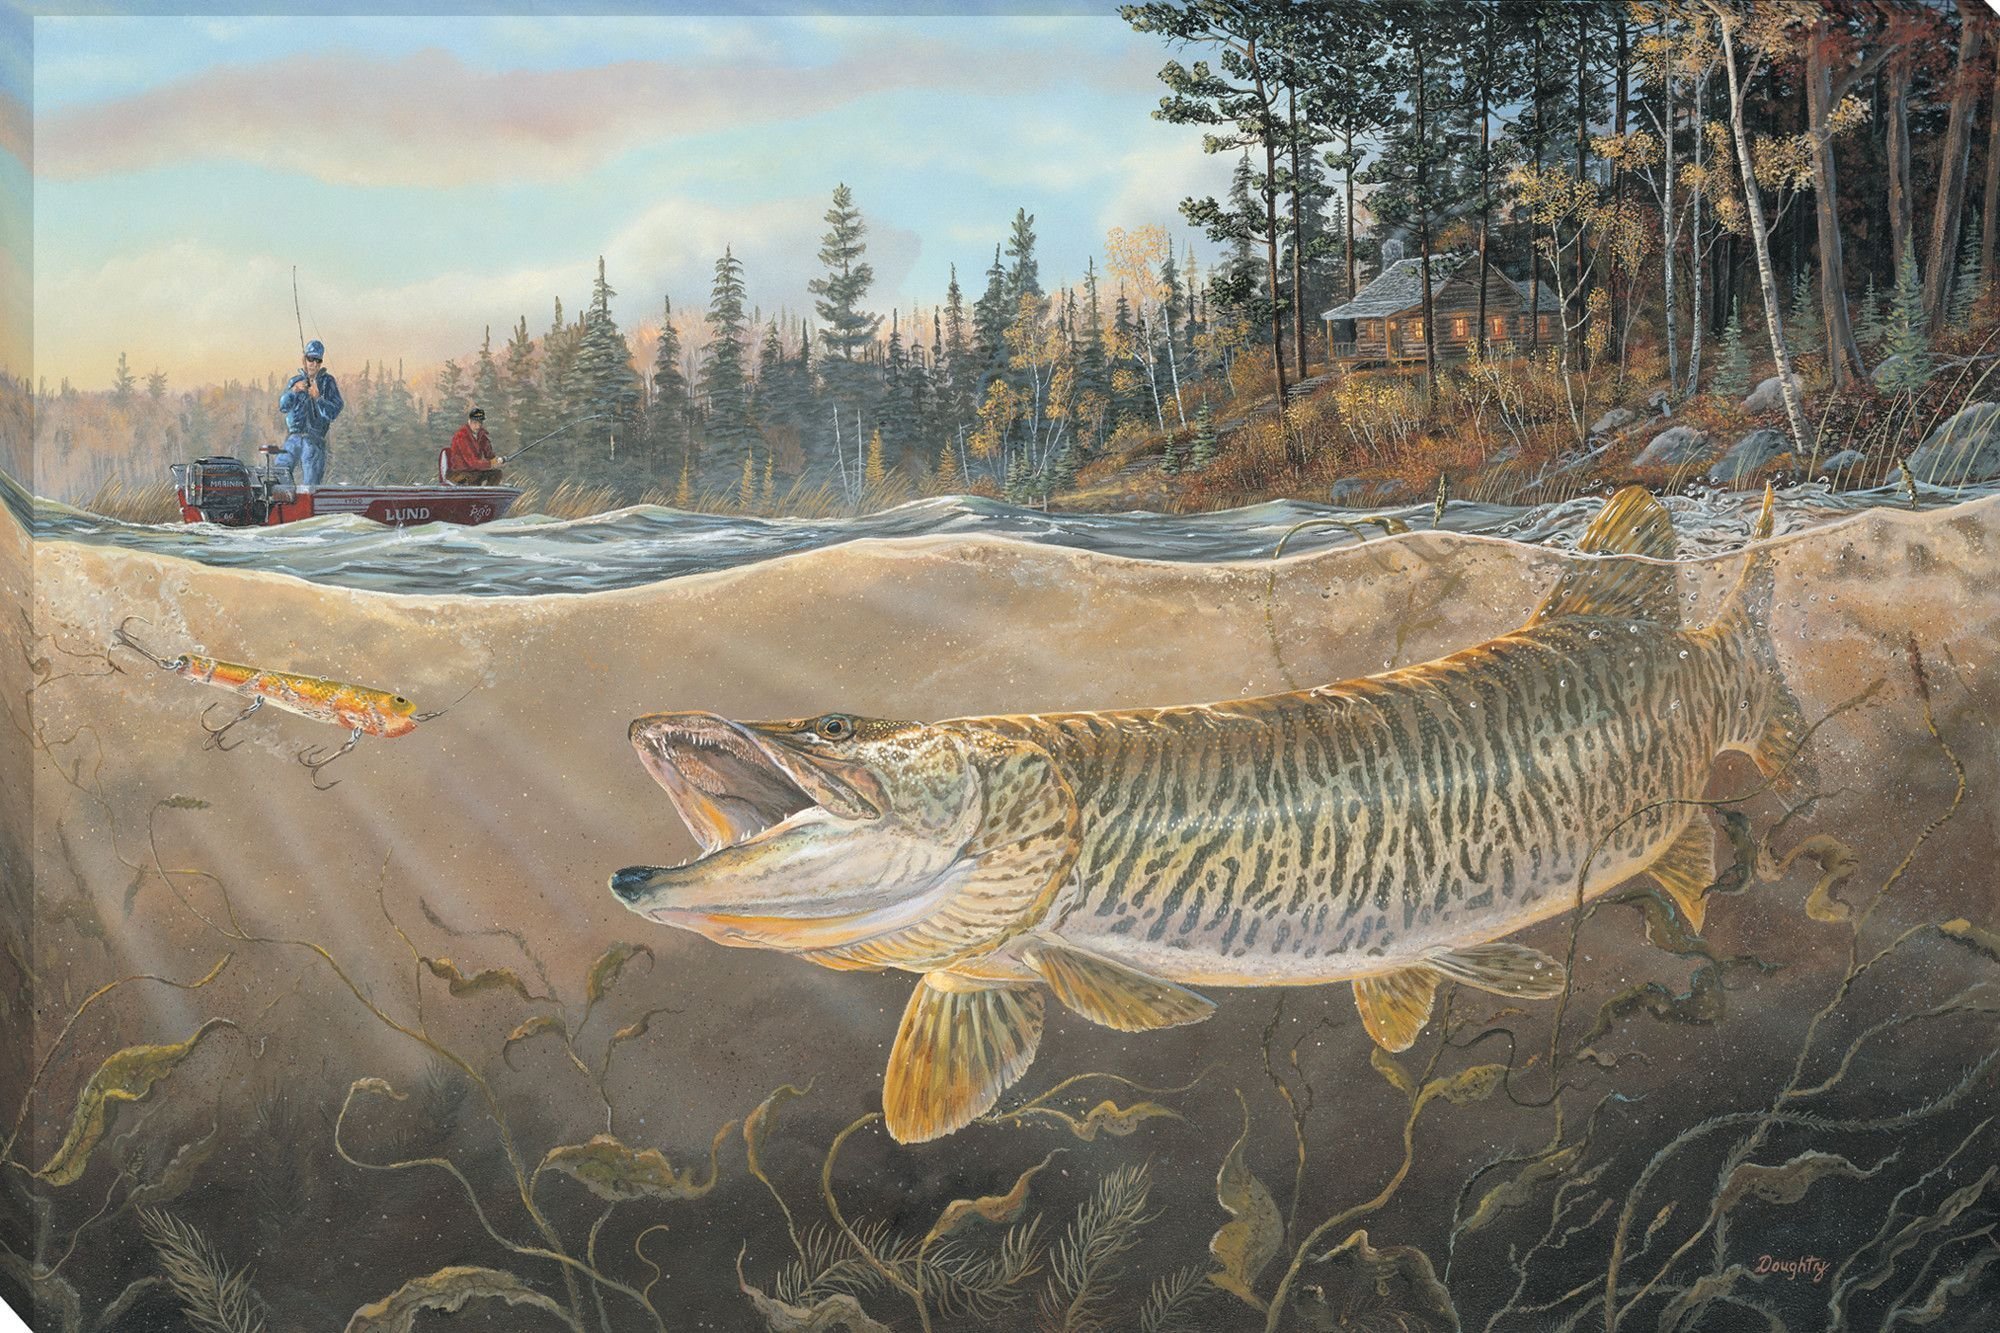 художественные картинки пресноводных рыб